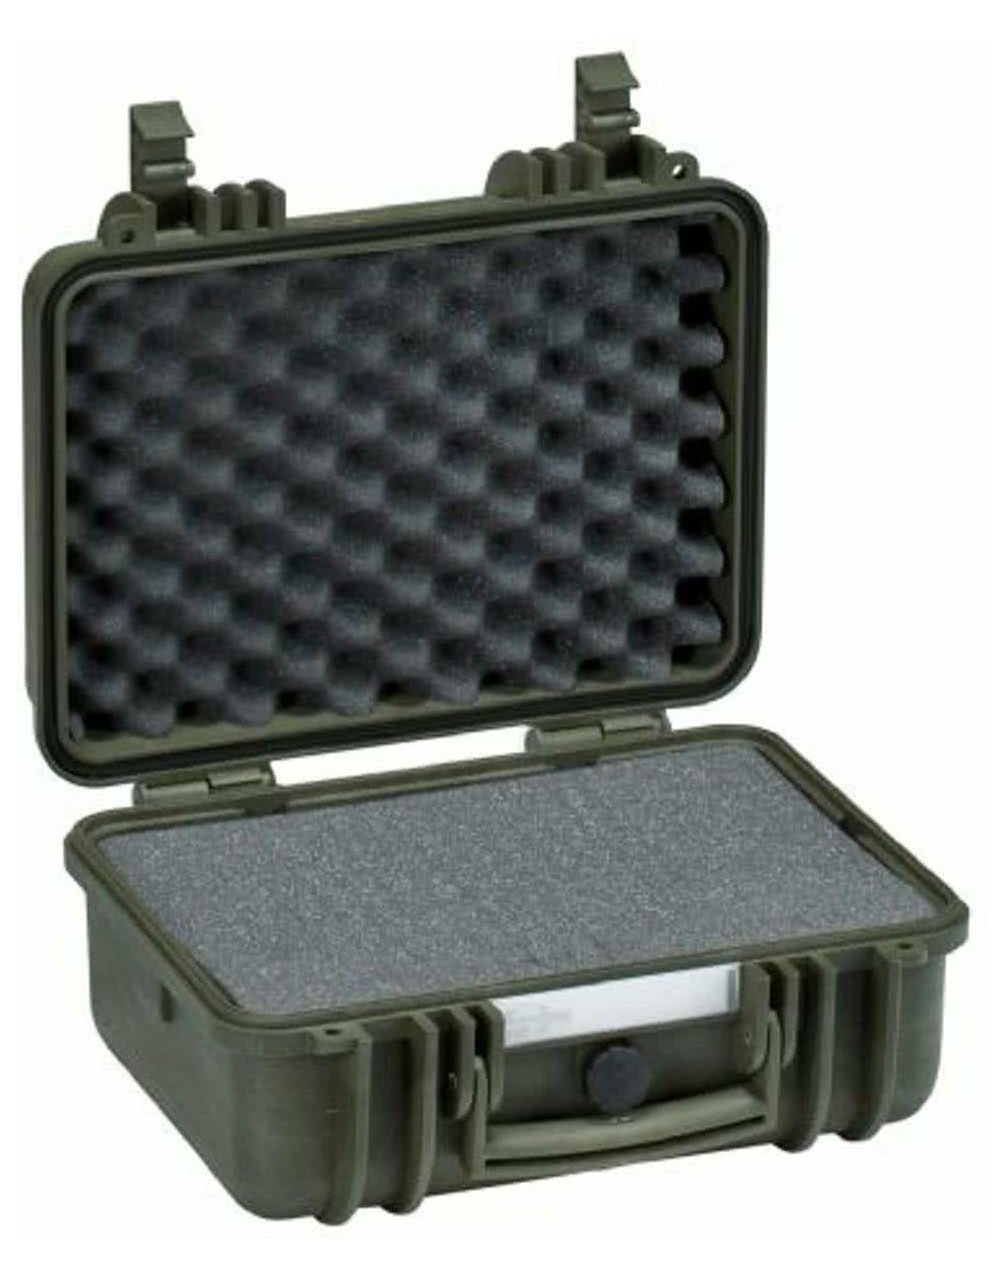 Explorer Cases 3317 Green Foam 360x304x194mm kufer za foto opremu kofer Camera Case